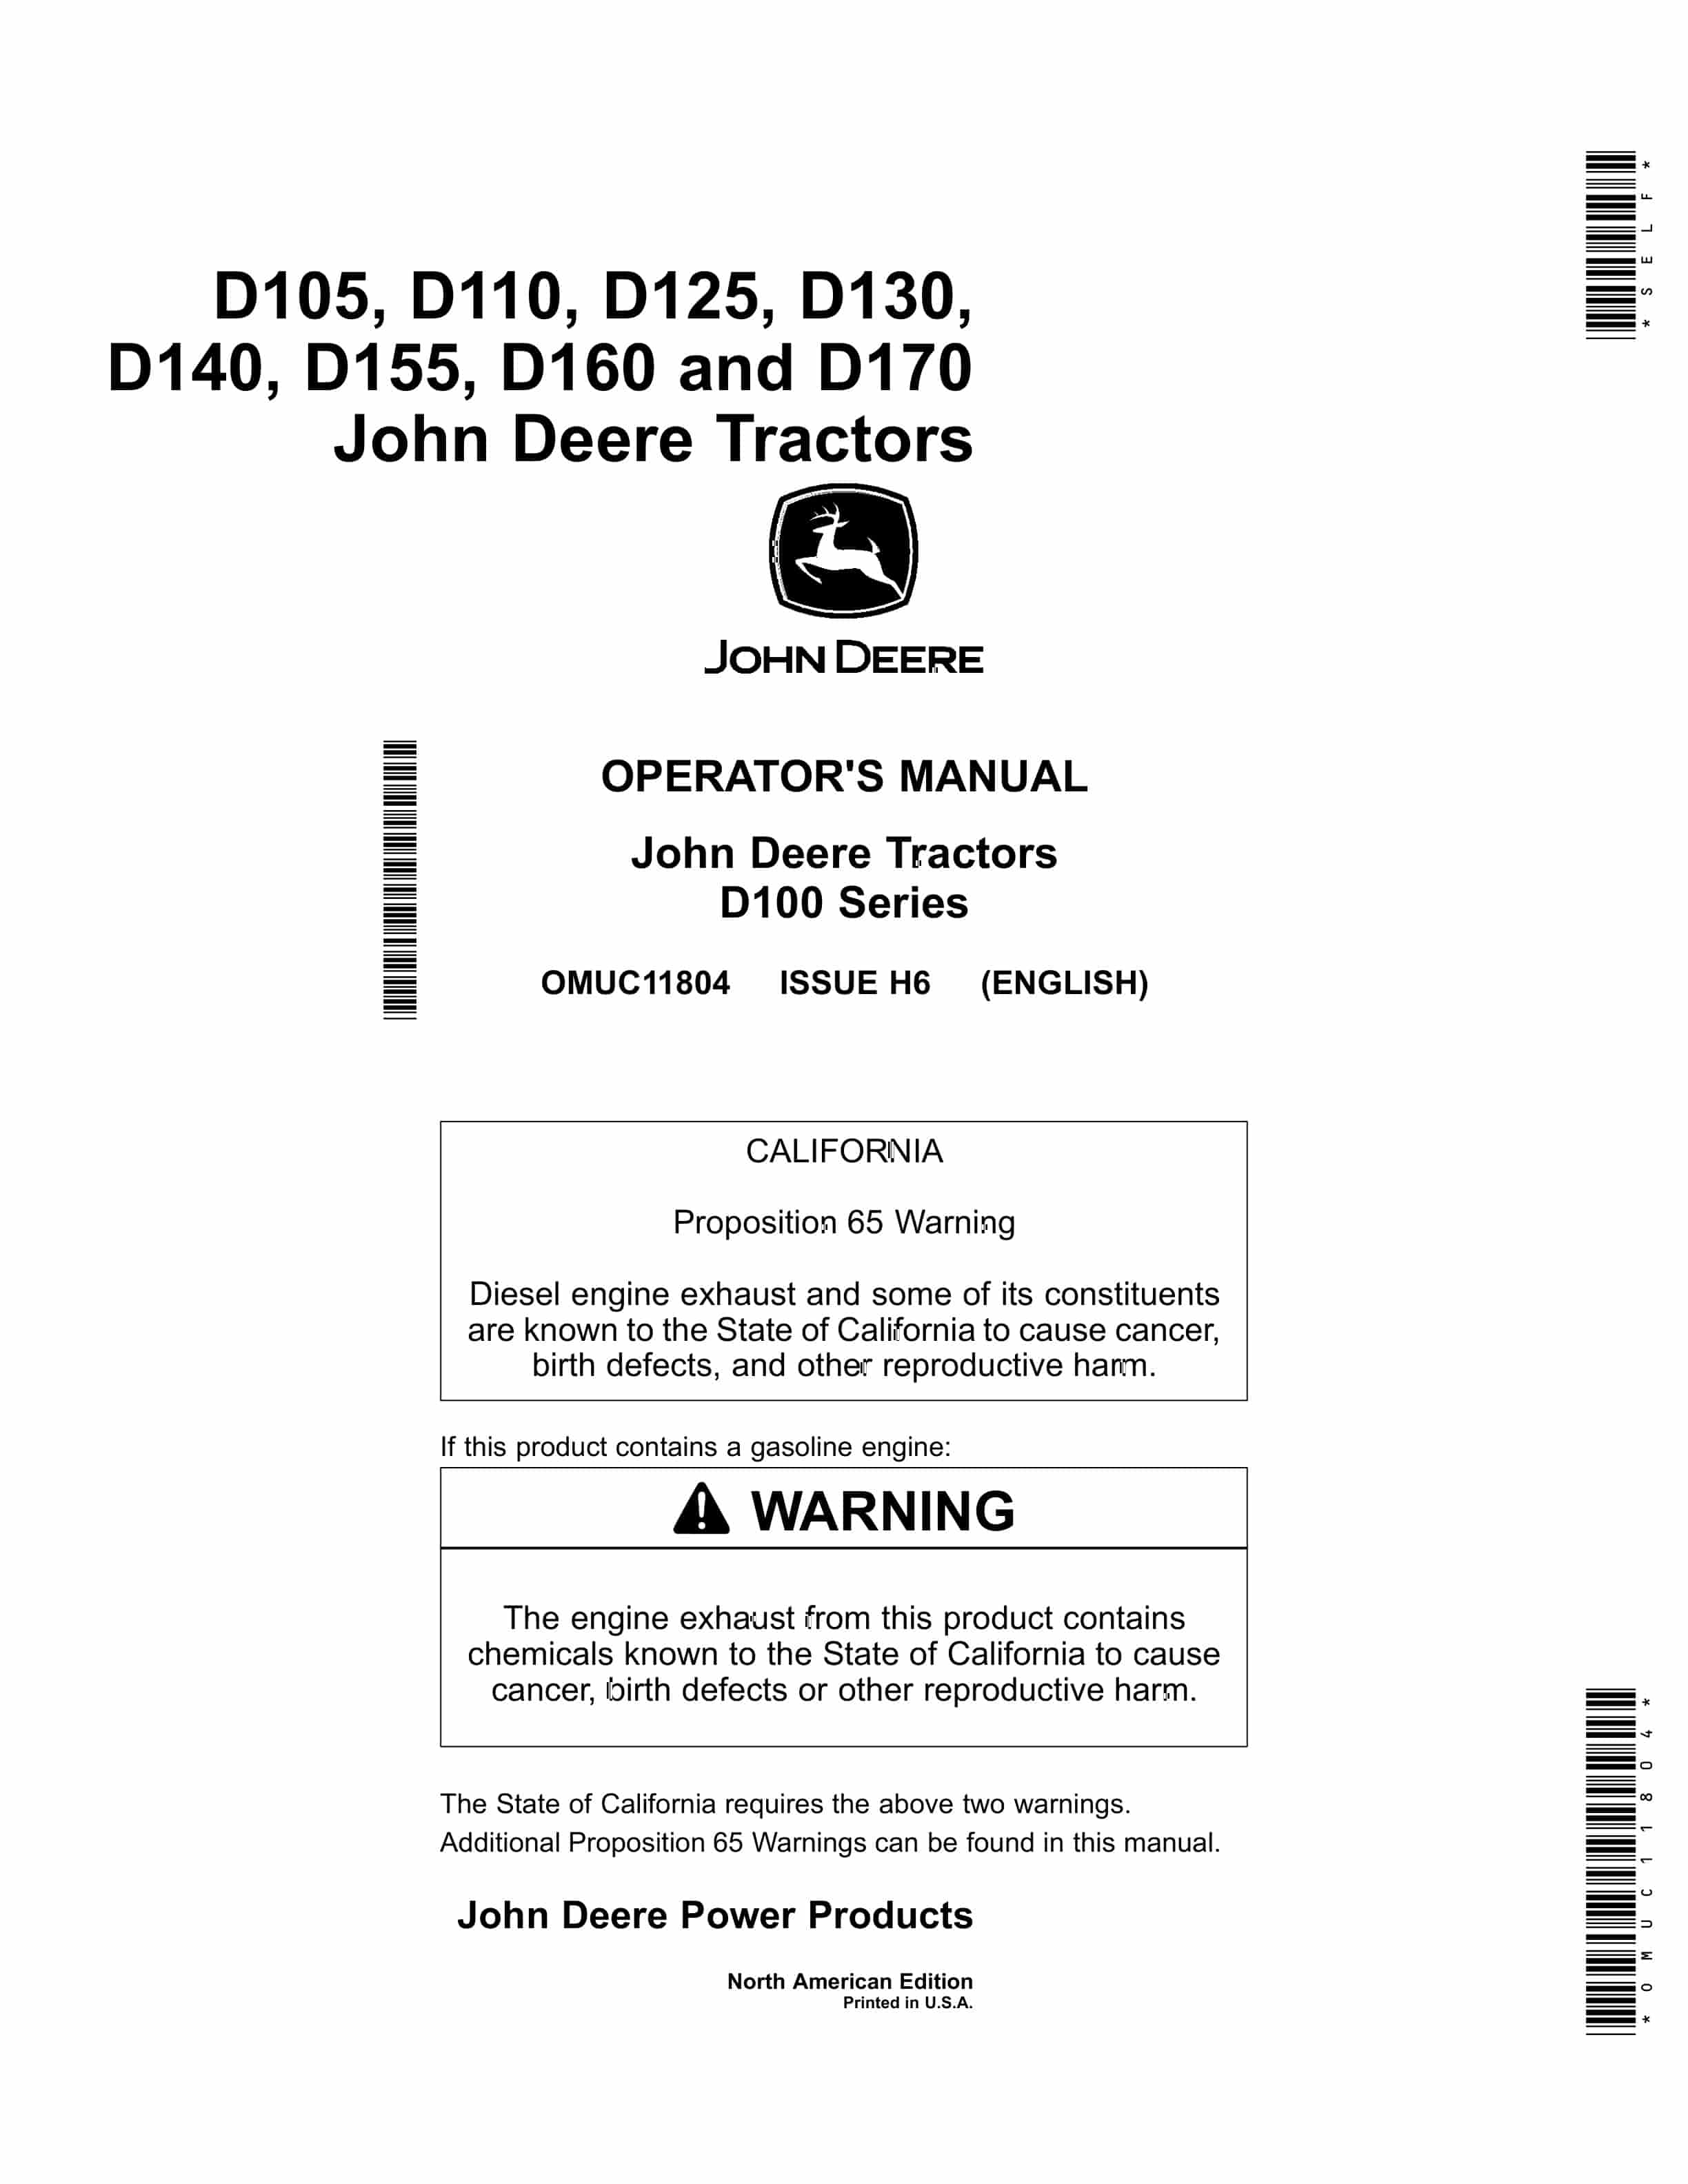 John Deere D105 D110 D125 D130 D140 D155 D160 and D170 Tractors Operator Manual OMUC11804 1